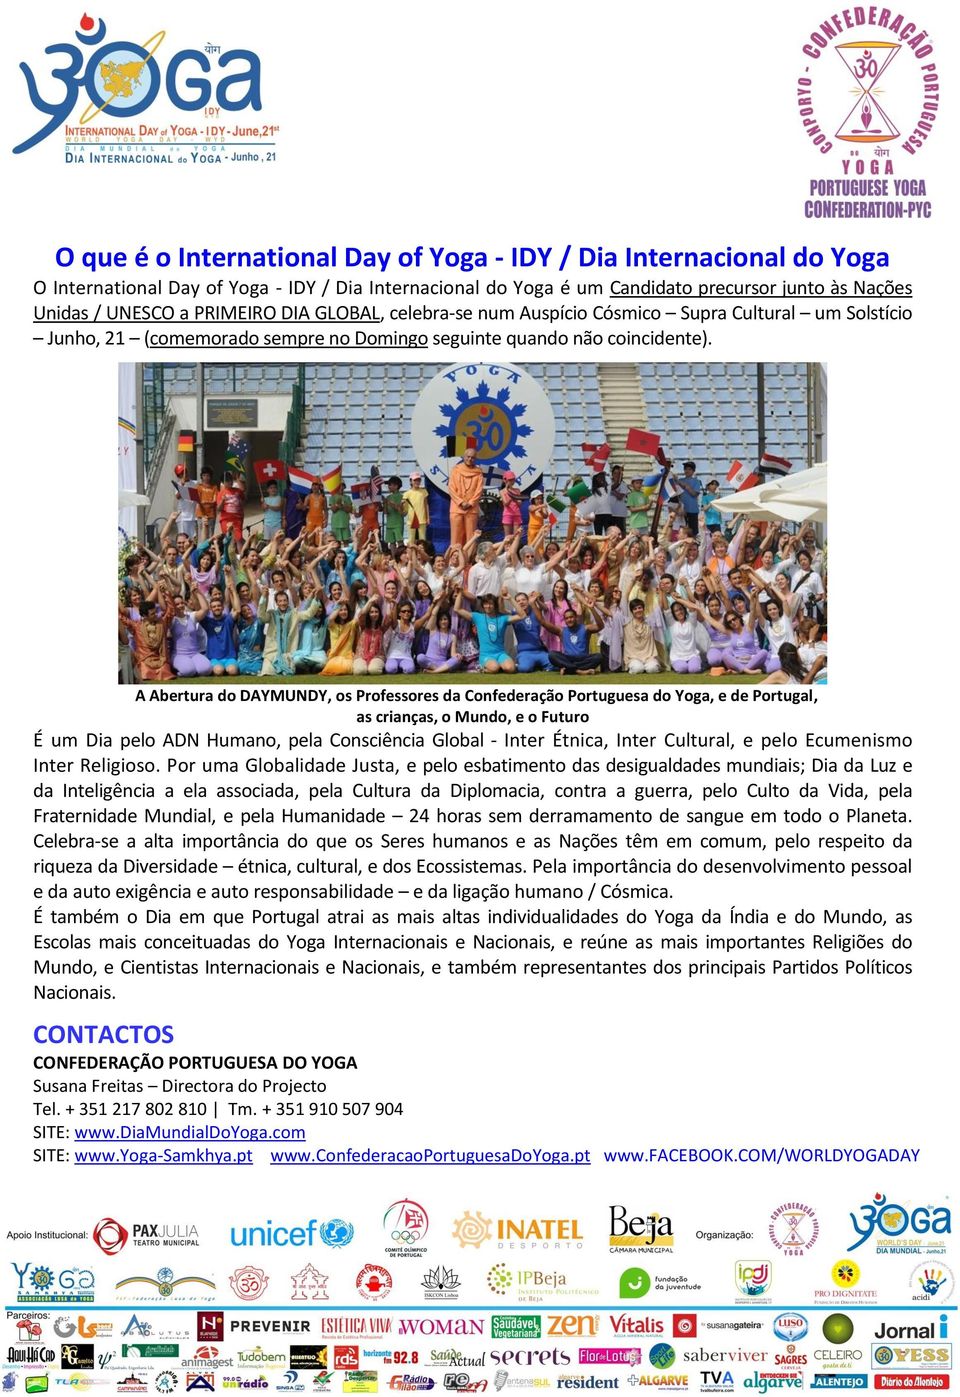 A Abertura do DAYMUNDY, os Professores da Confederação Portuguesa do Yoga, e de Portugal, as crianças, o Mundo, e o Futuro É um Dia pelo ADN Humano, pela Consciência Global - Inter Étnica, Inter